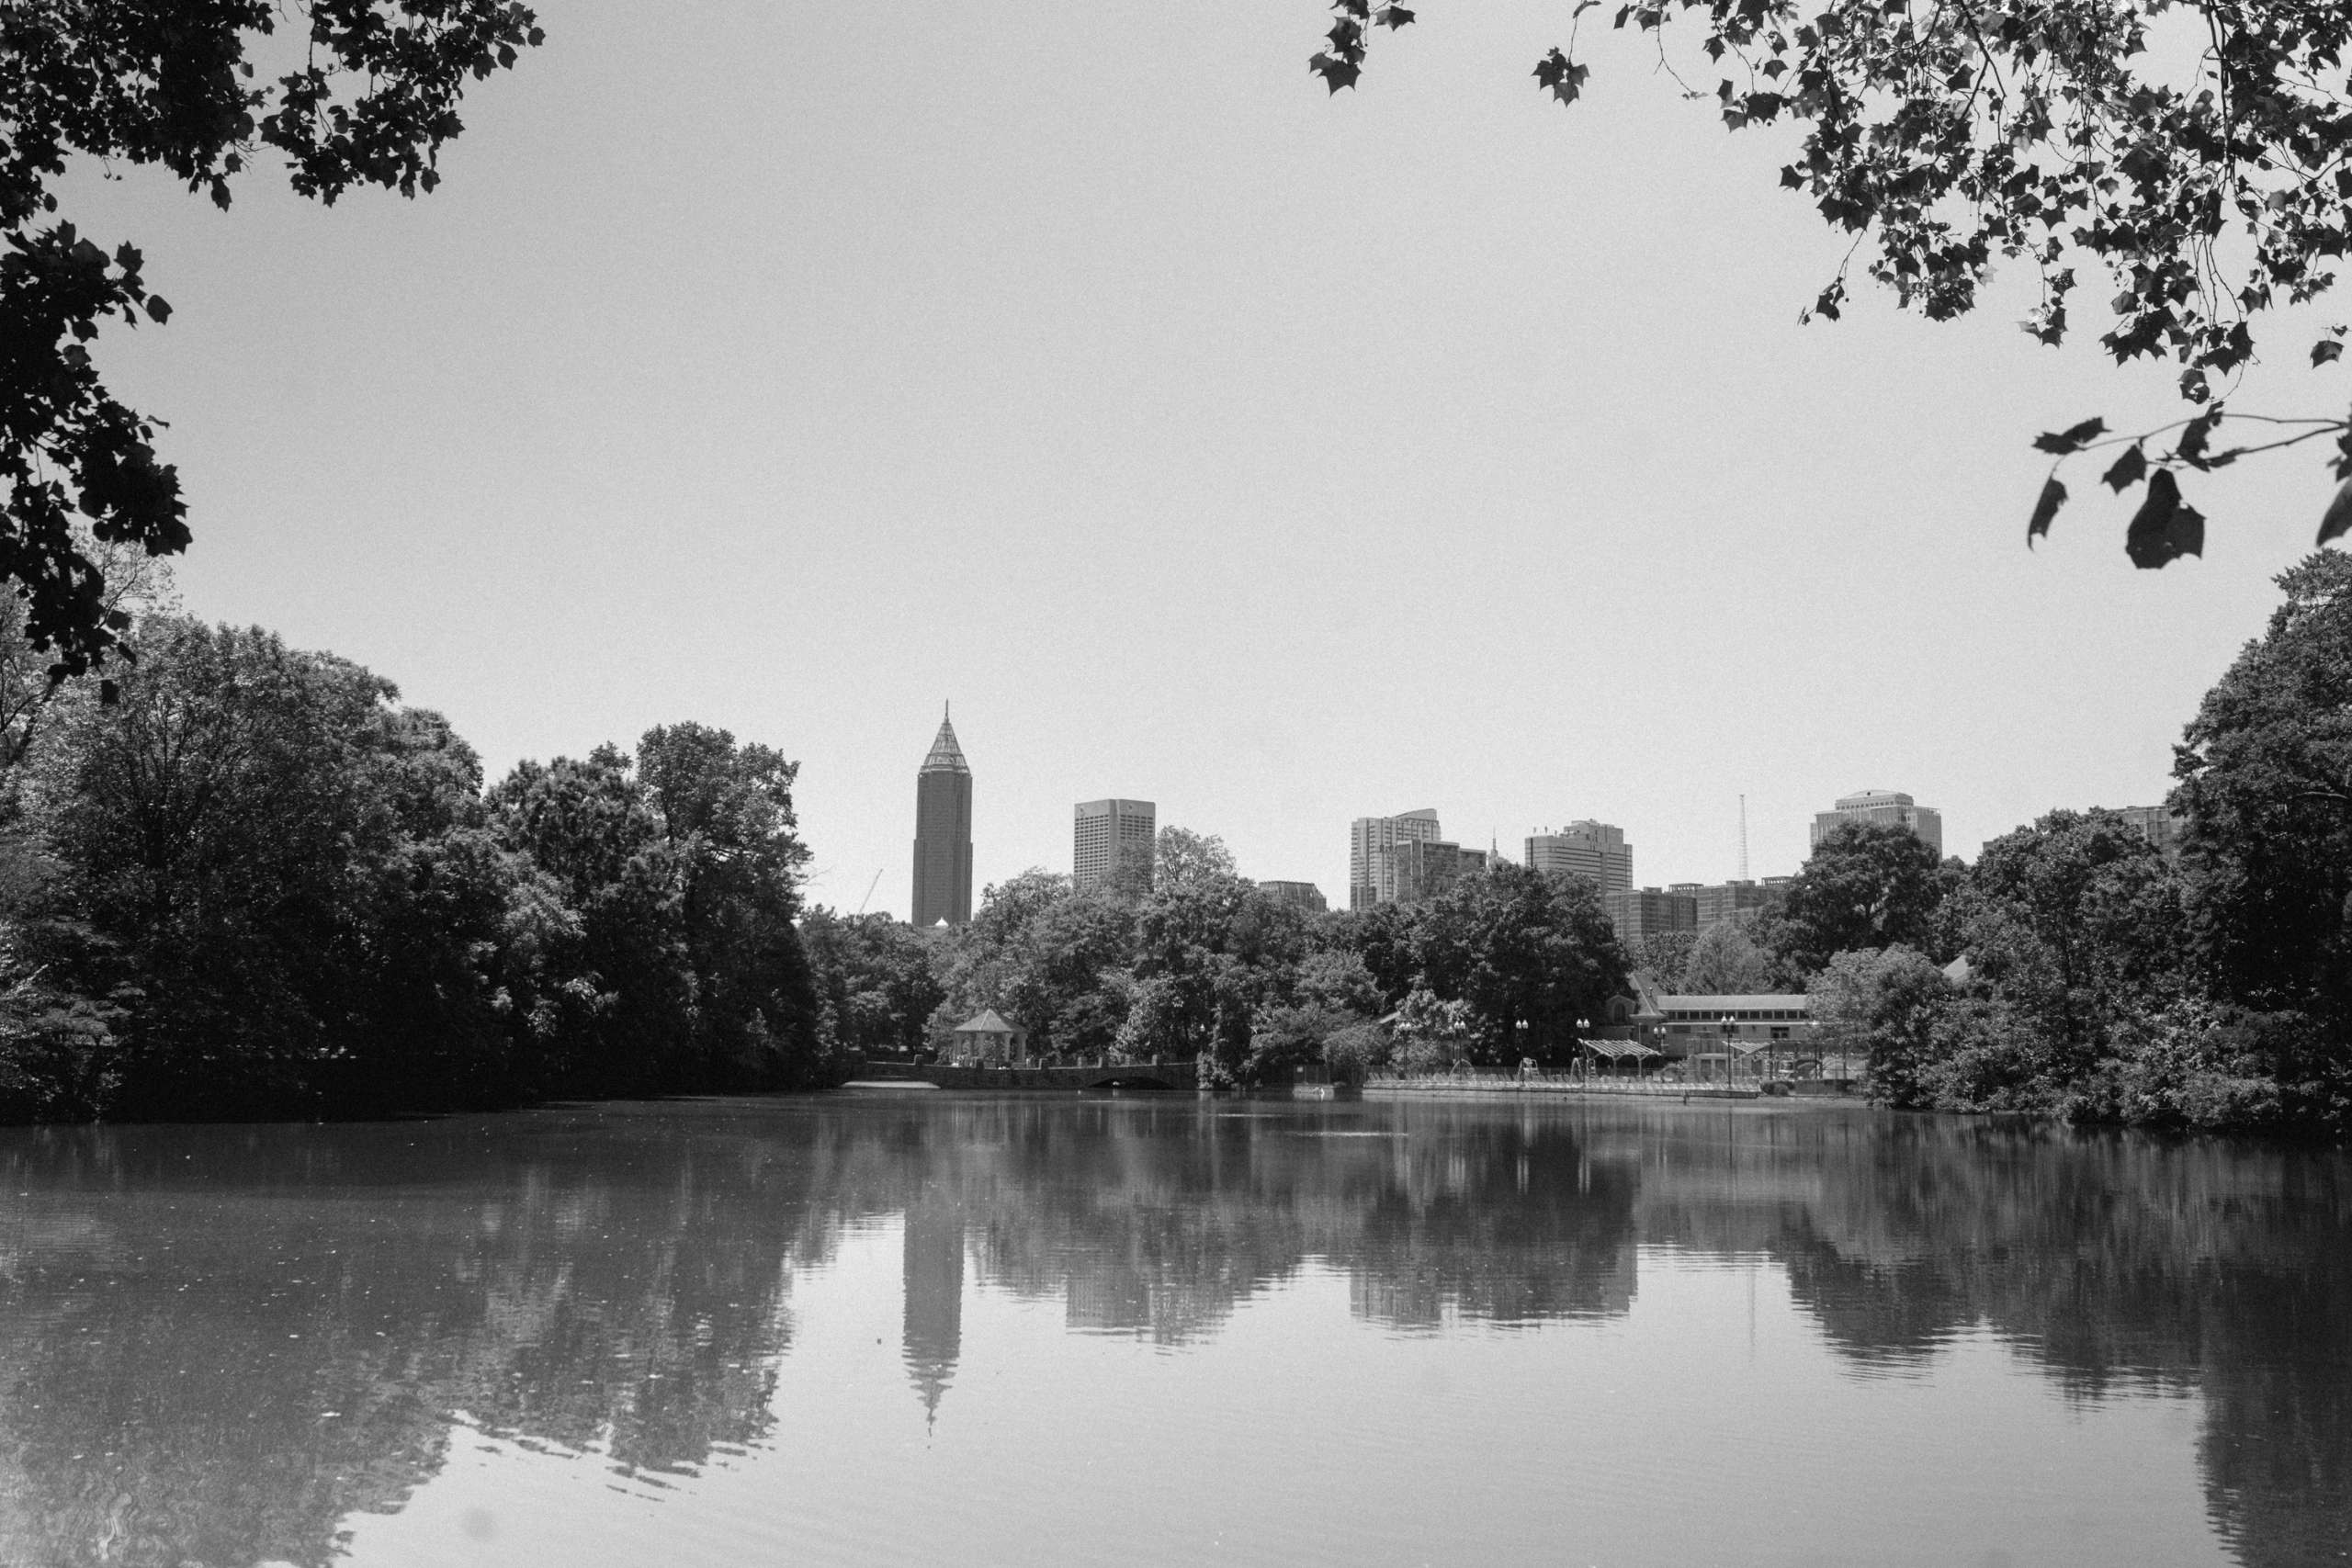 The Atlanta skyline in black and white.